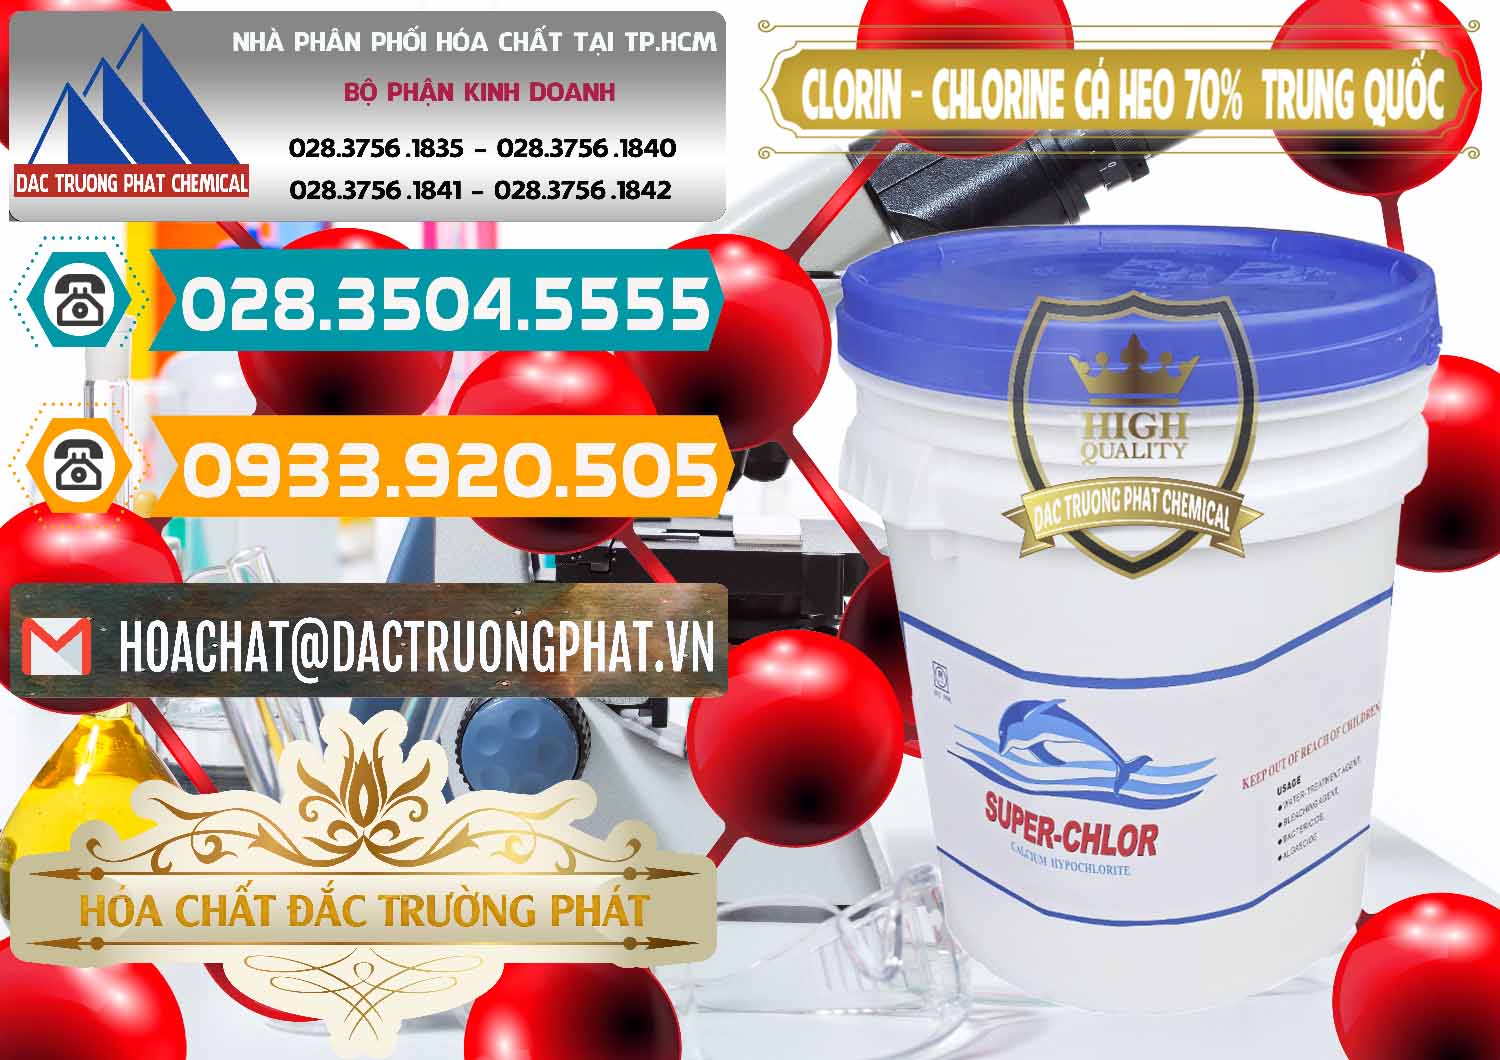 Nơi phân phối & bán Clorin - Chlorine Cá Heo 70% Super Chlor Nắp Xanh Trung Quốc China - 0209 - Cty phân phối - cung cấp hóa chất tại TP.HCM - congtyhoachat.vn